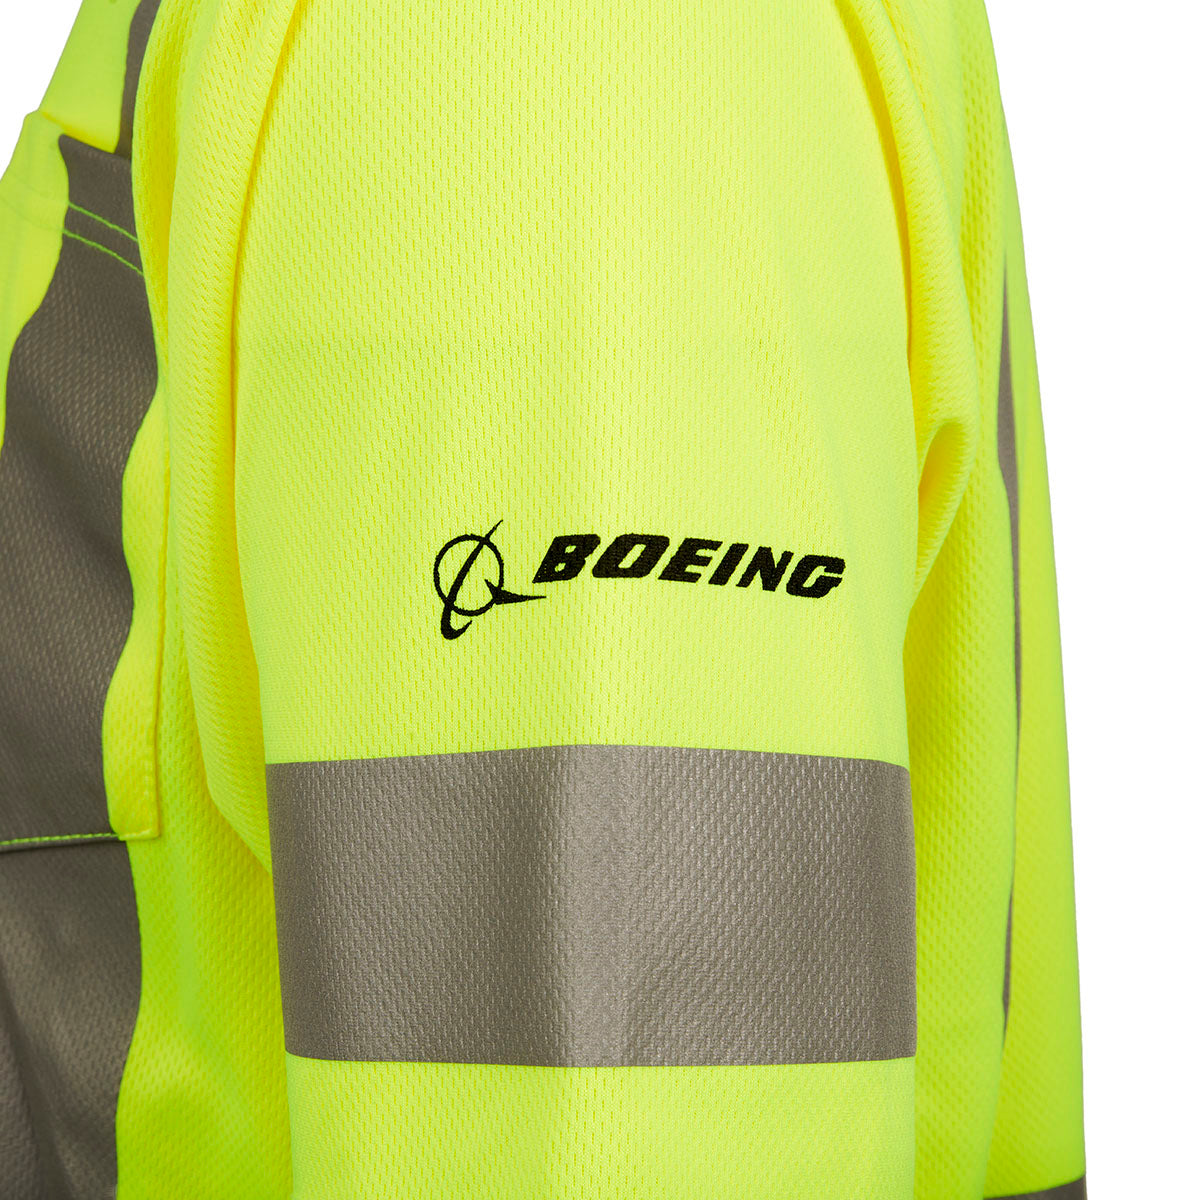 Boeing San Antonio Unisex Safety T-Shirt